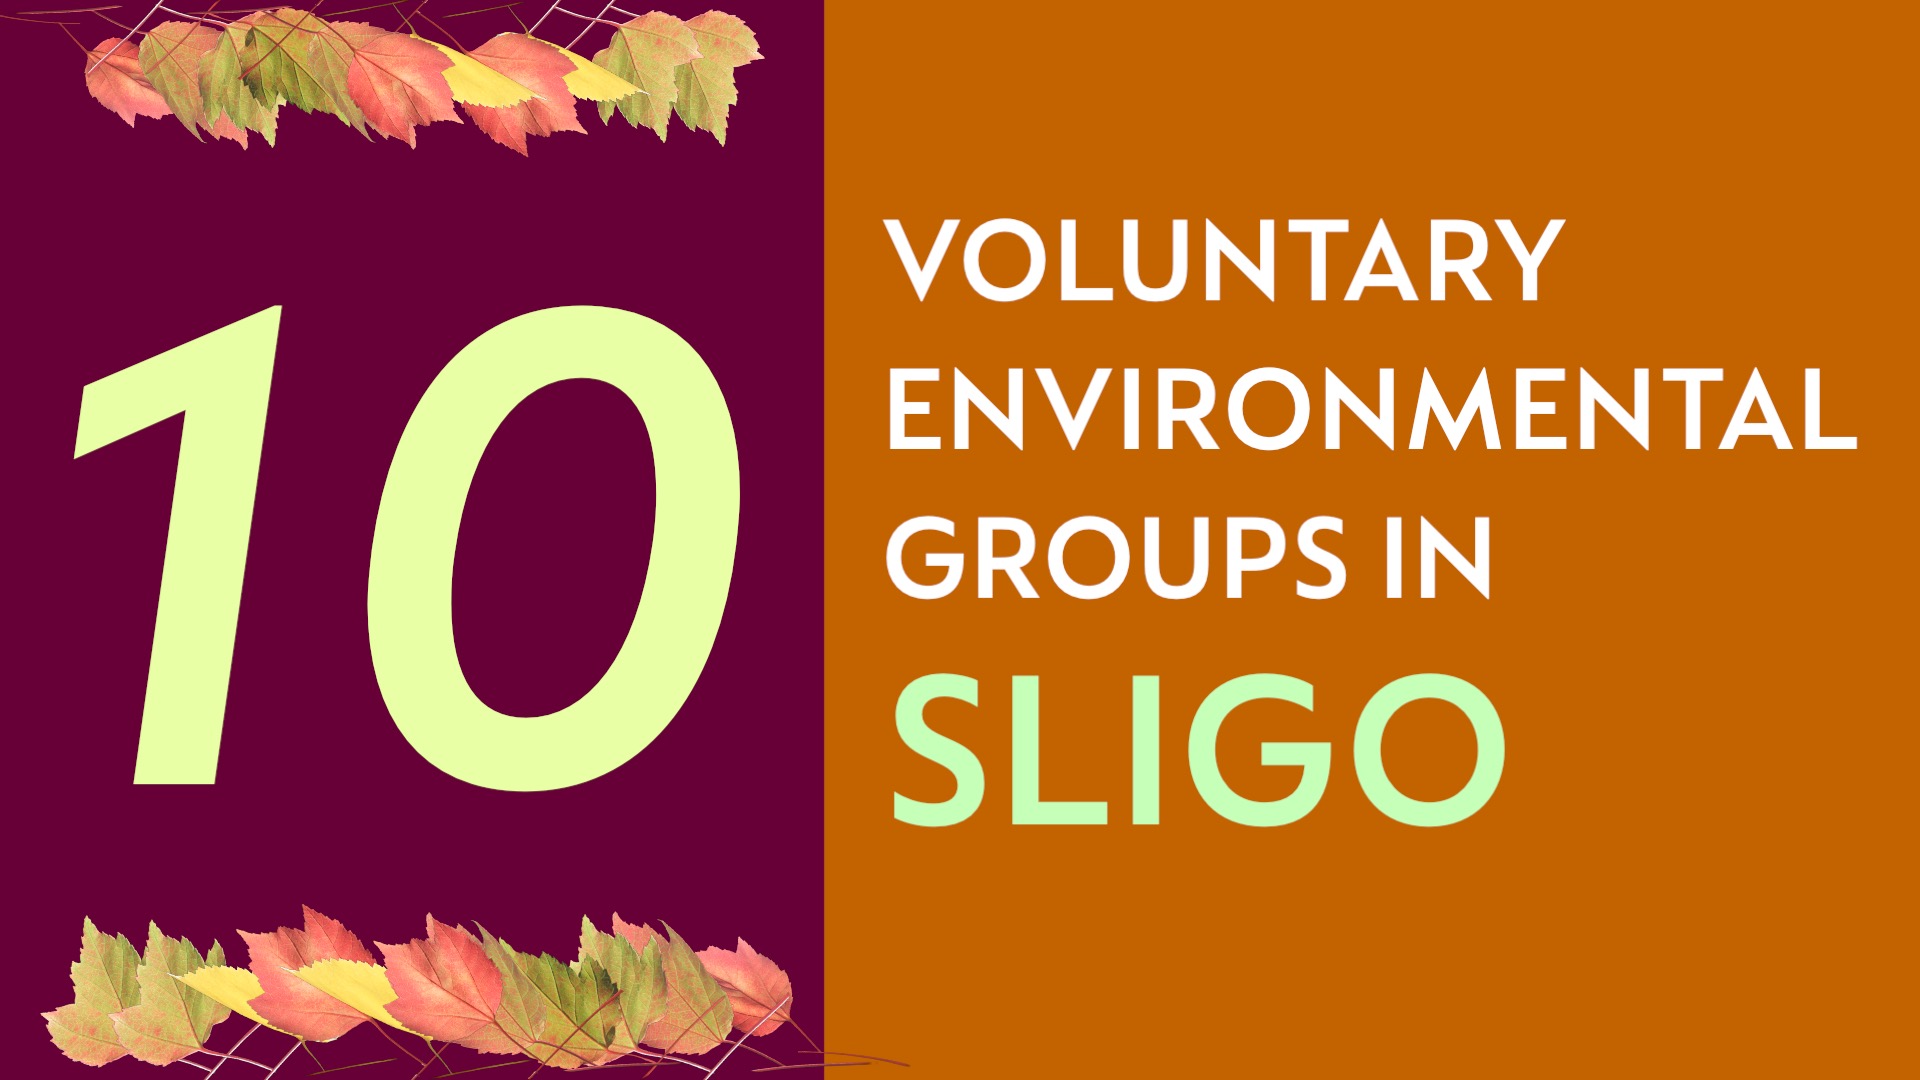 Blog 7 - Sligo’s Environmental Community